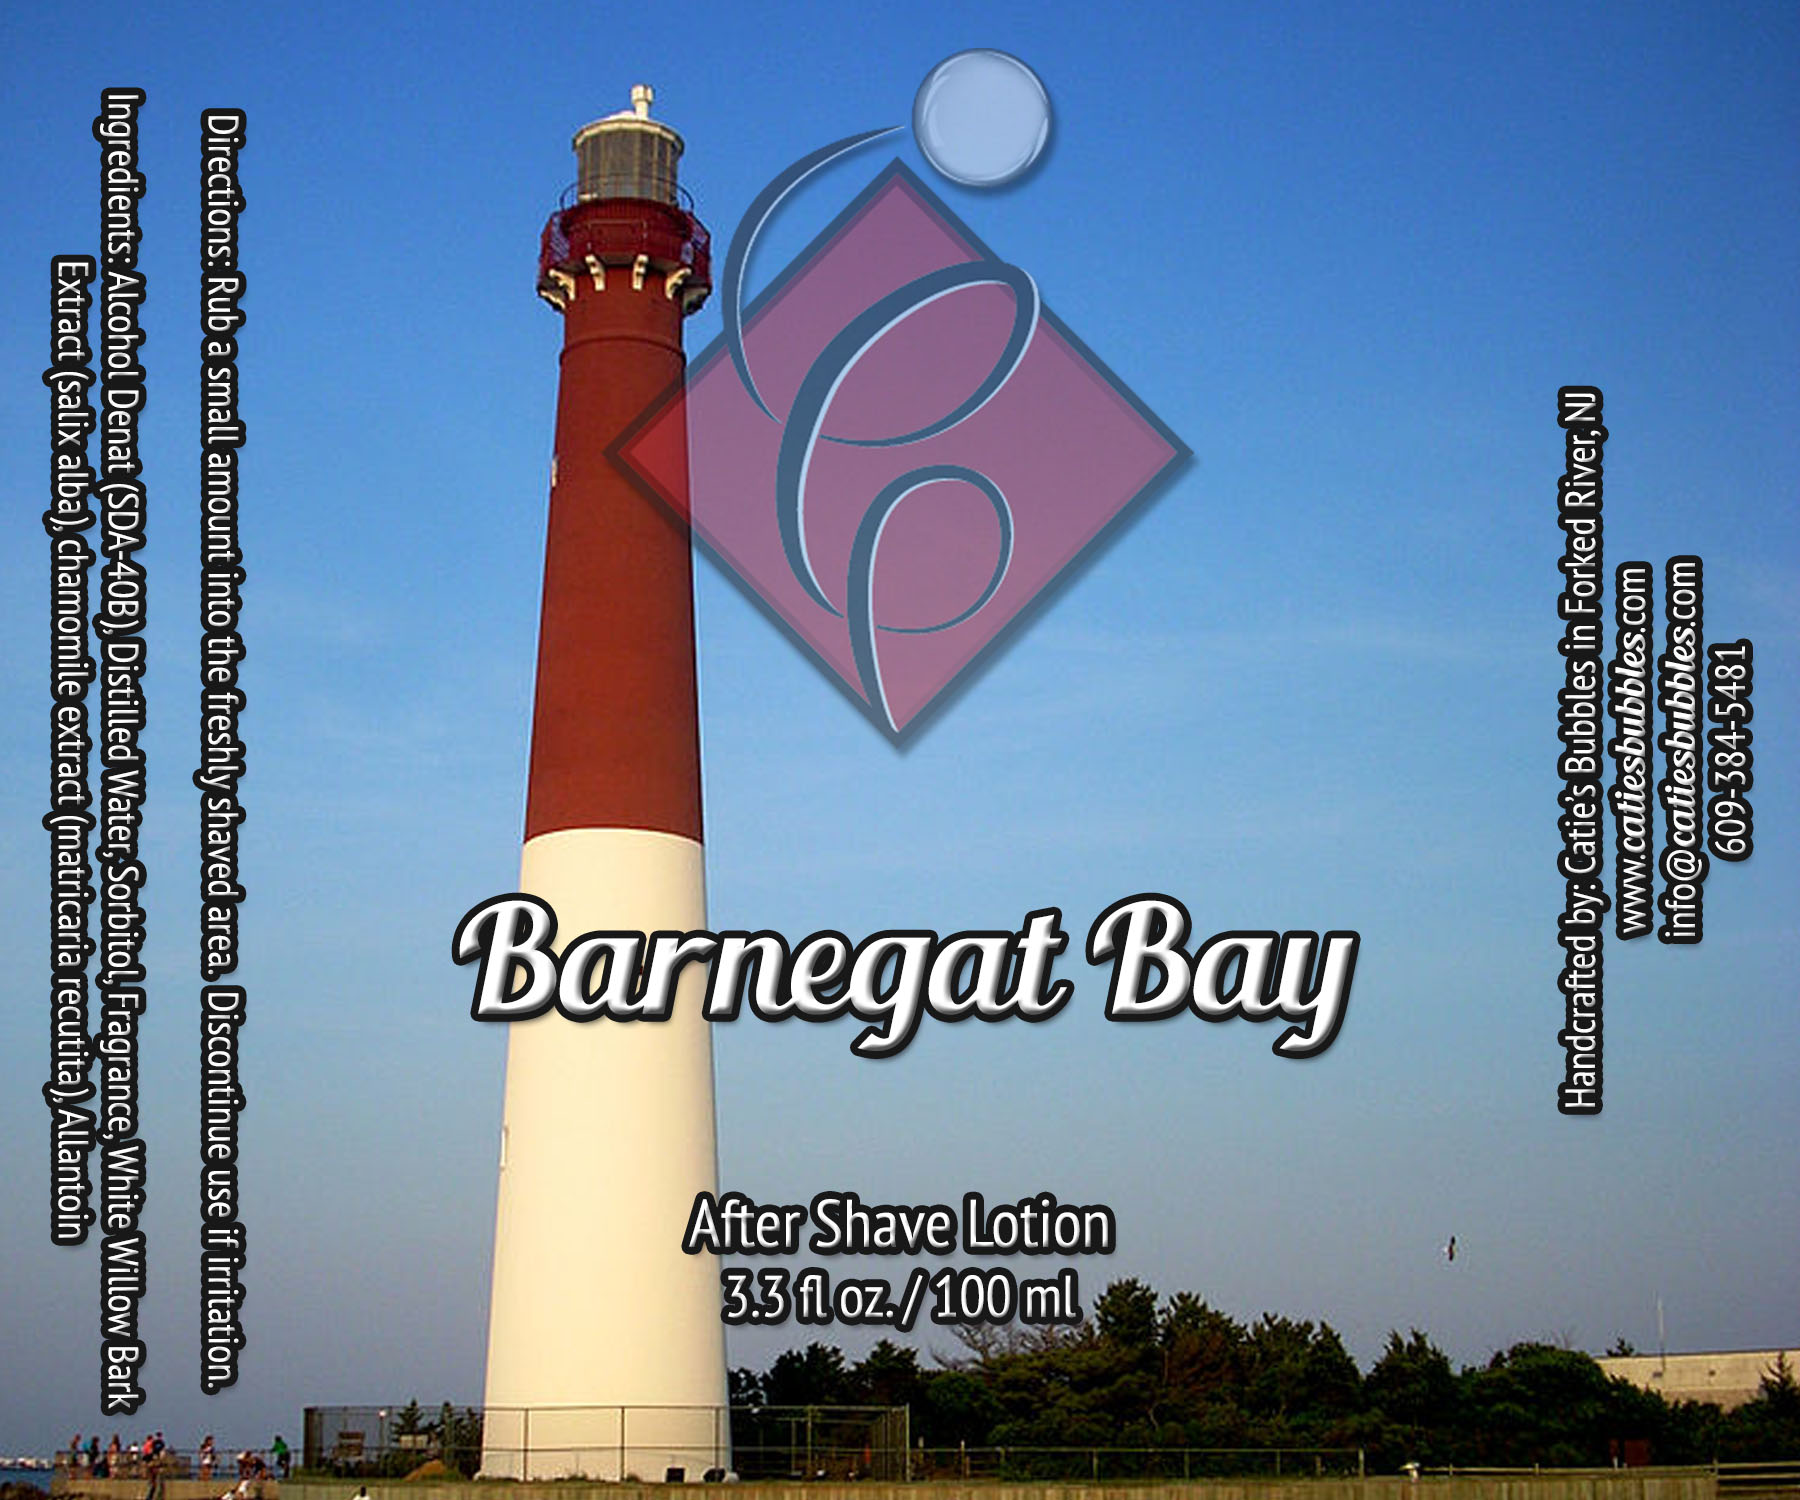 Barnegat Bay After Shave Lotion